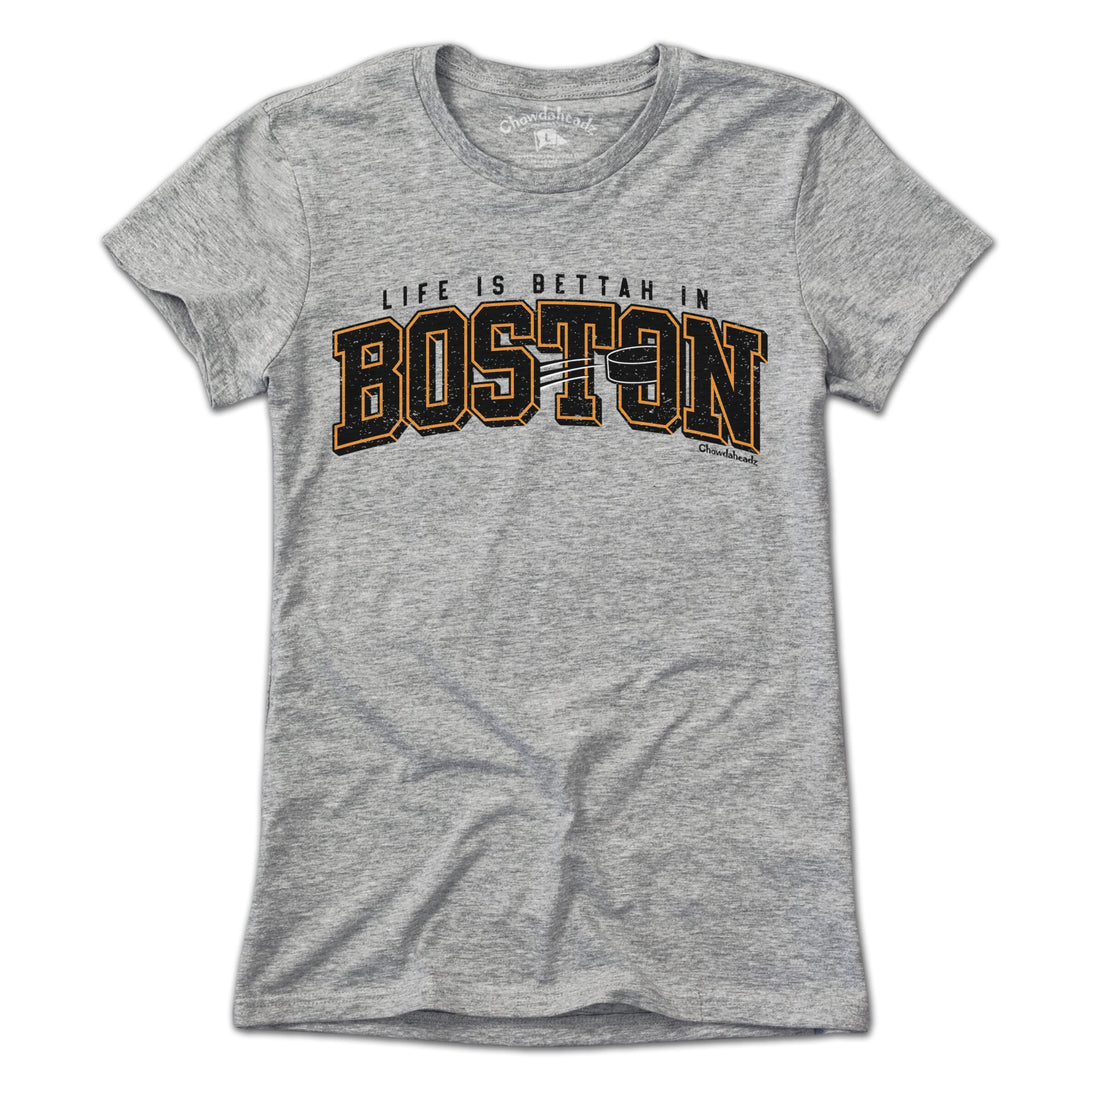 Life is Bettah in Boston Hockey T-Shirt - Chowdaheadz